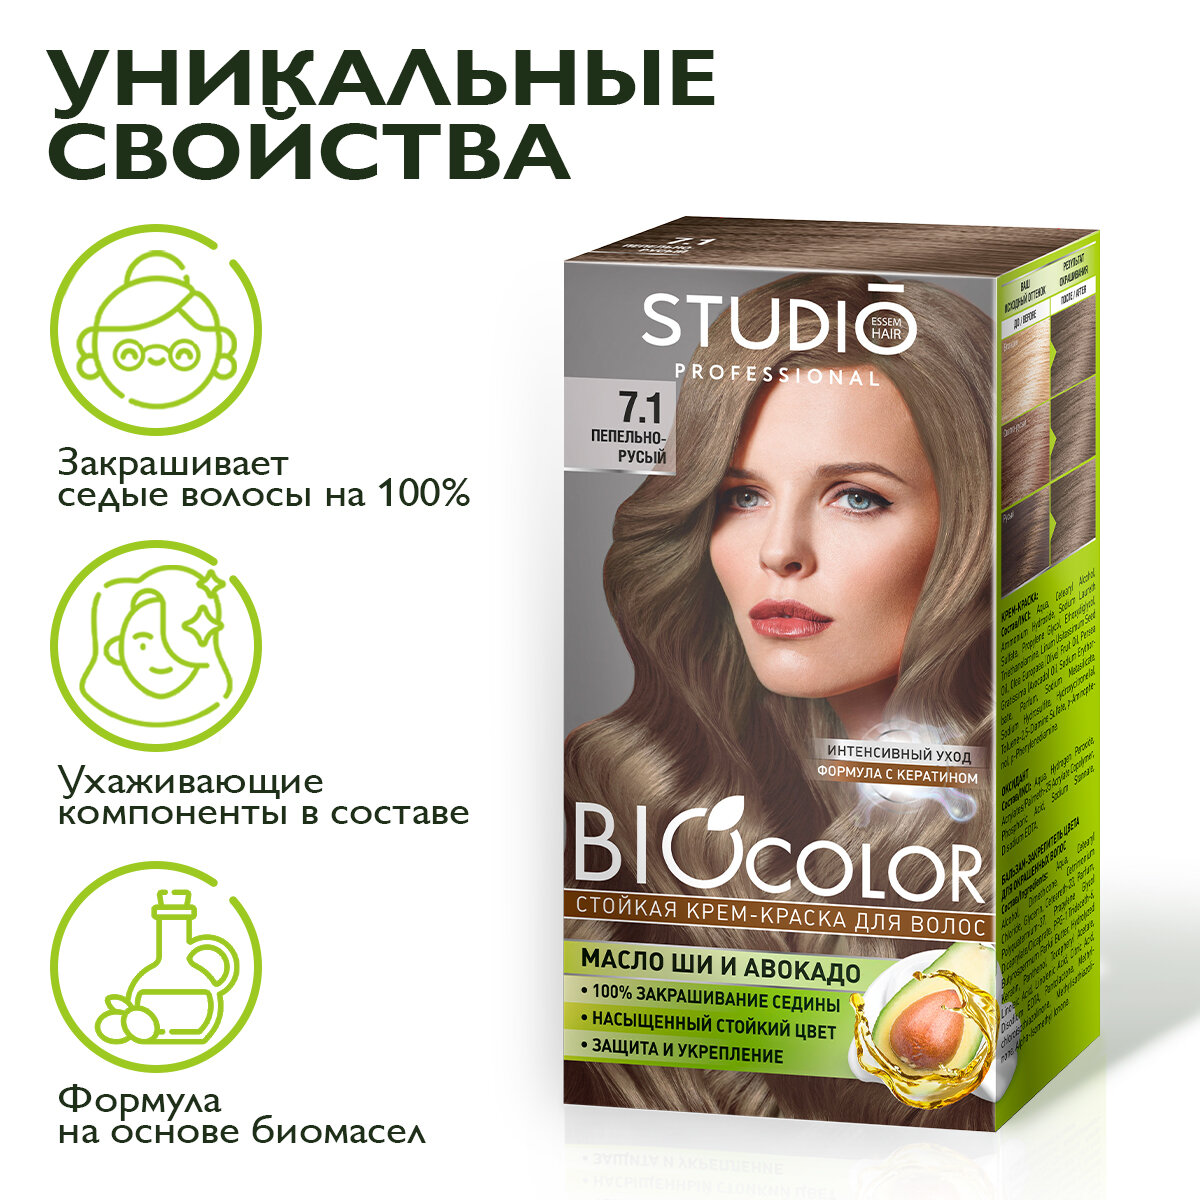 Studio Biocolor Краска для волос 7.1 Пепельно-русый 50/50/15 мл - 2 штуки